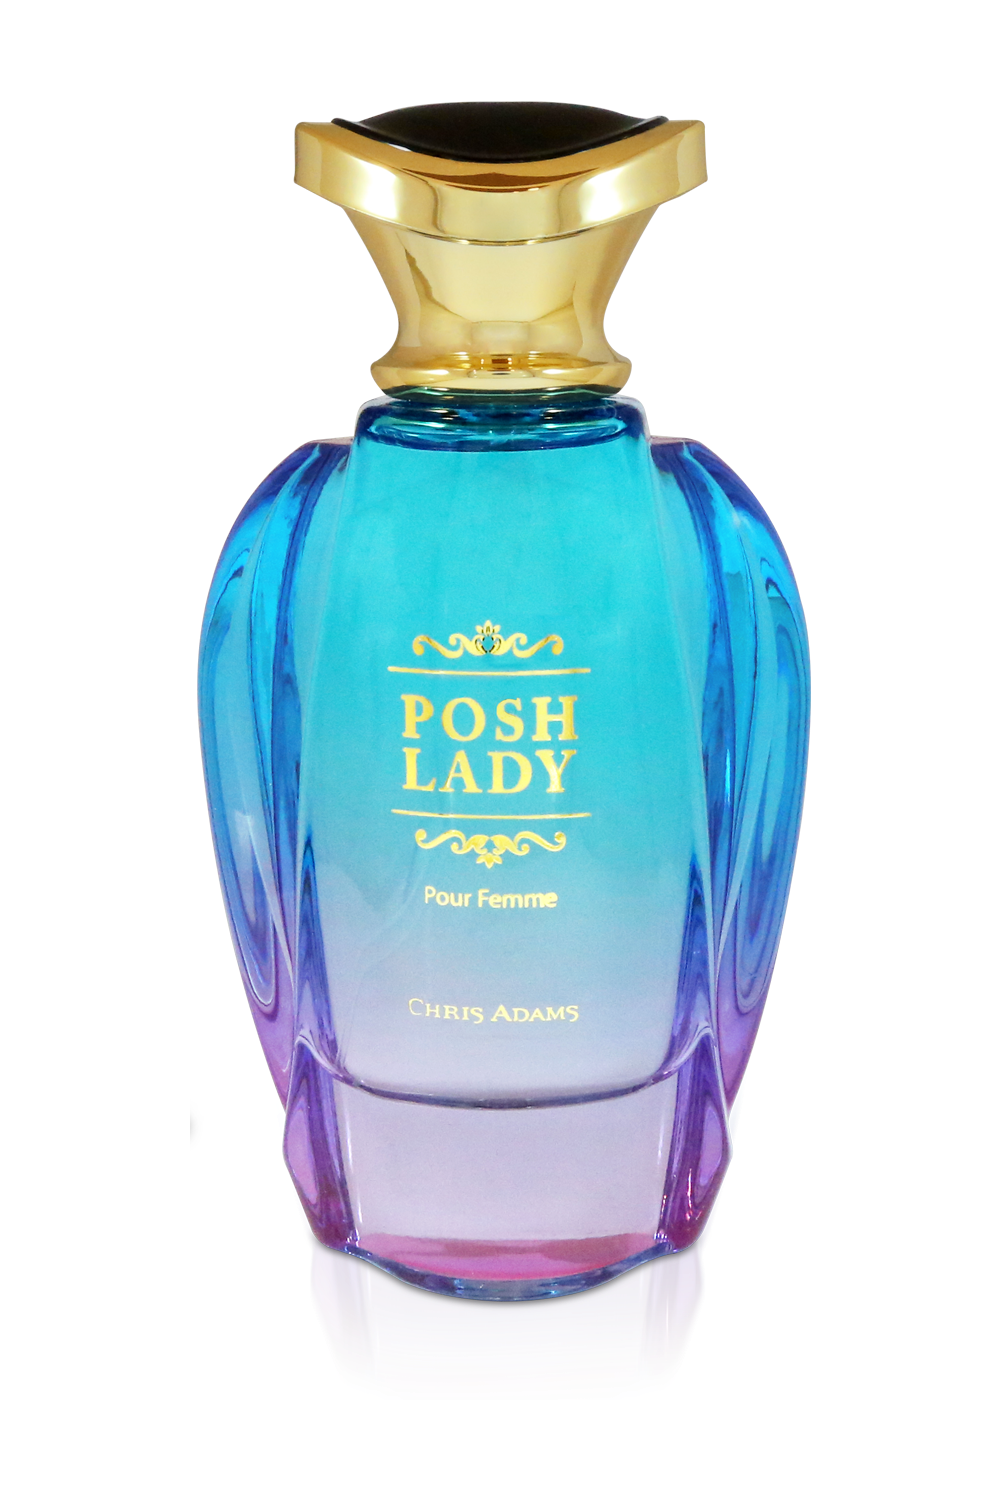 POSH LADY Spray Perfume